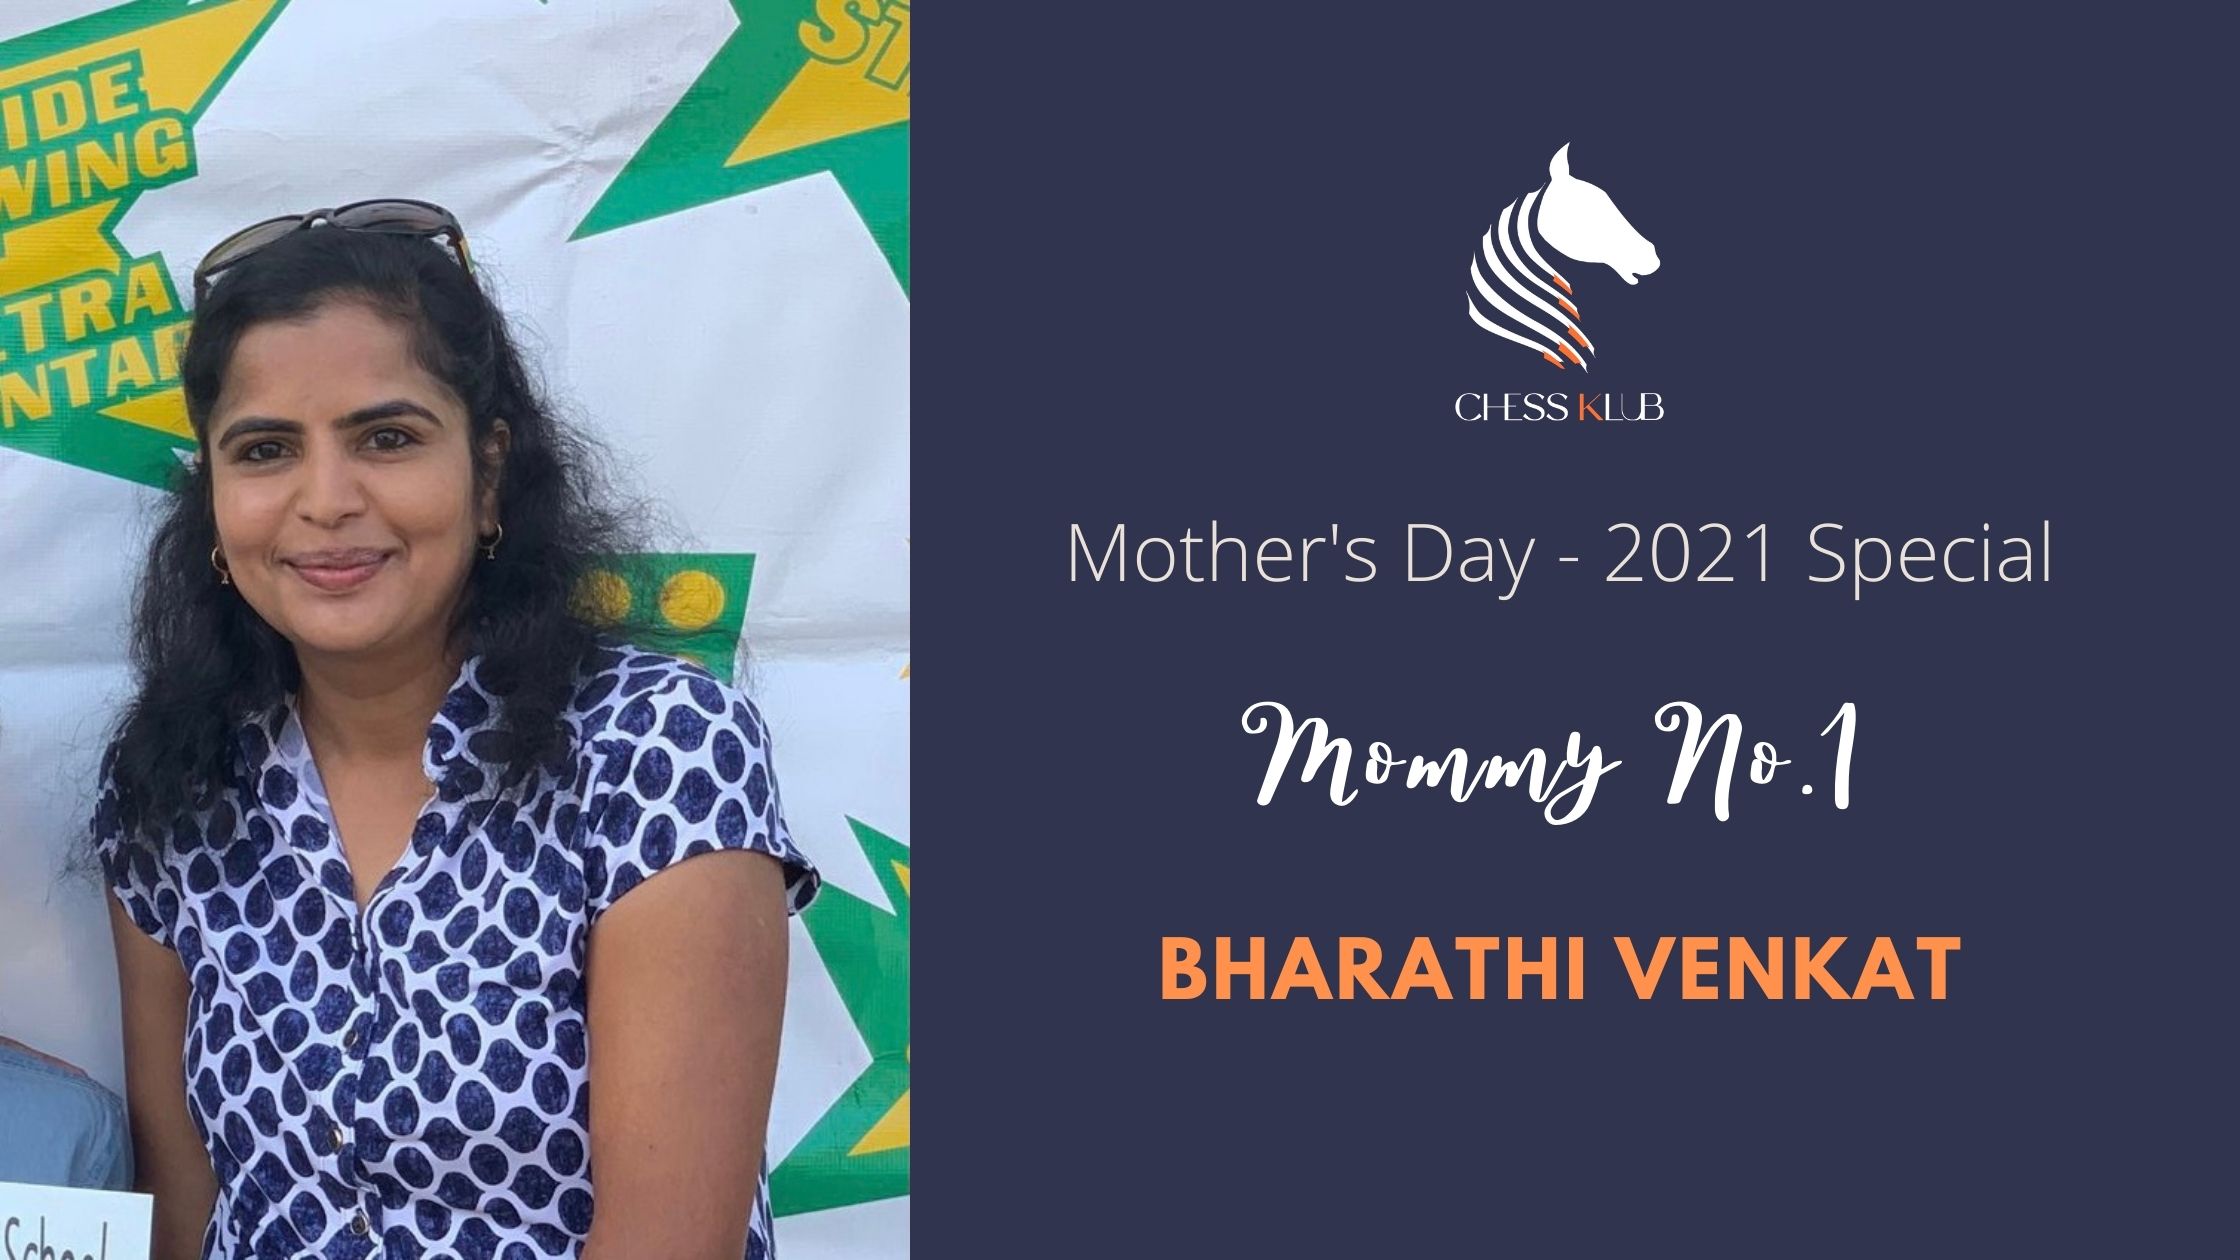 Bharathi Venkat - Women's Day Tournament Winner